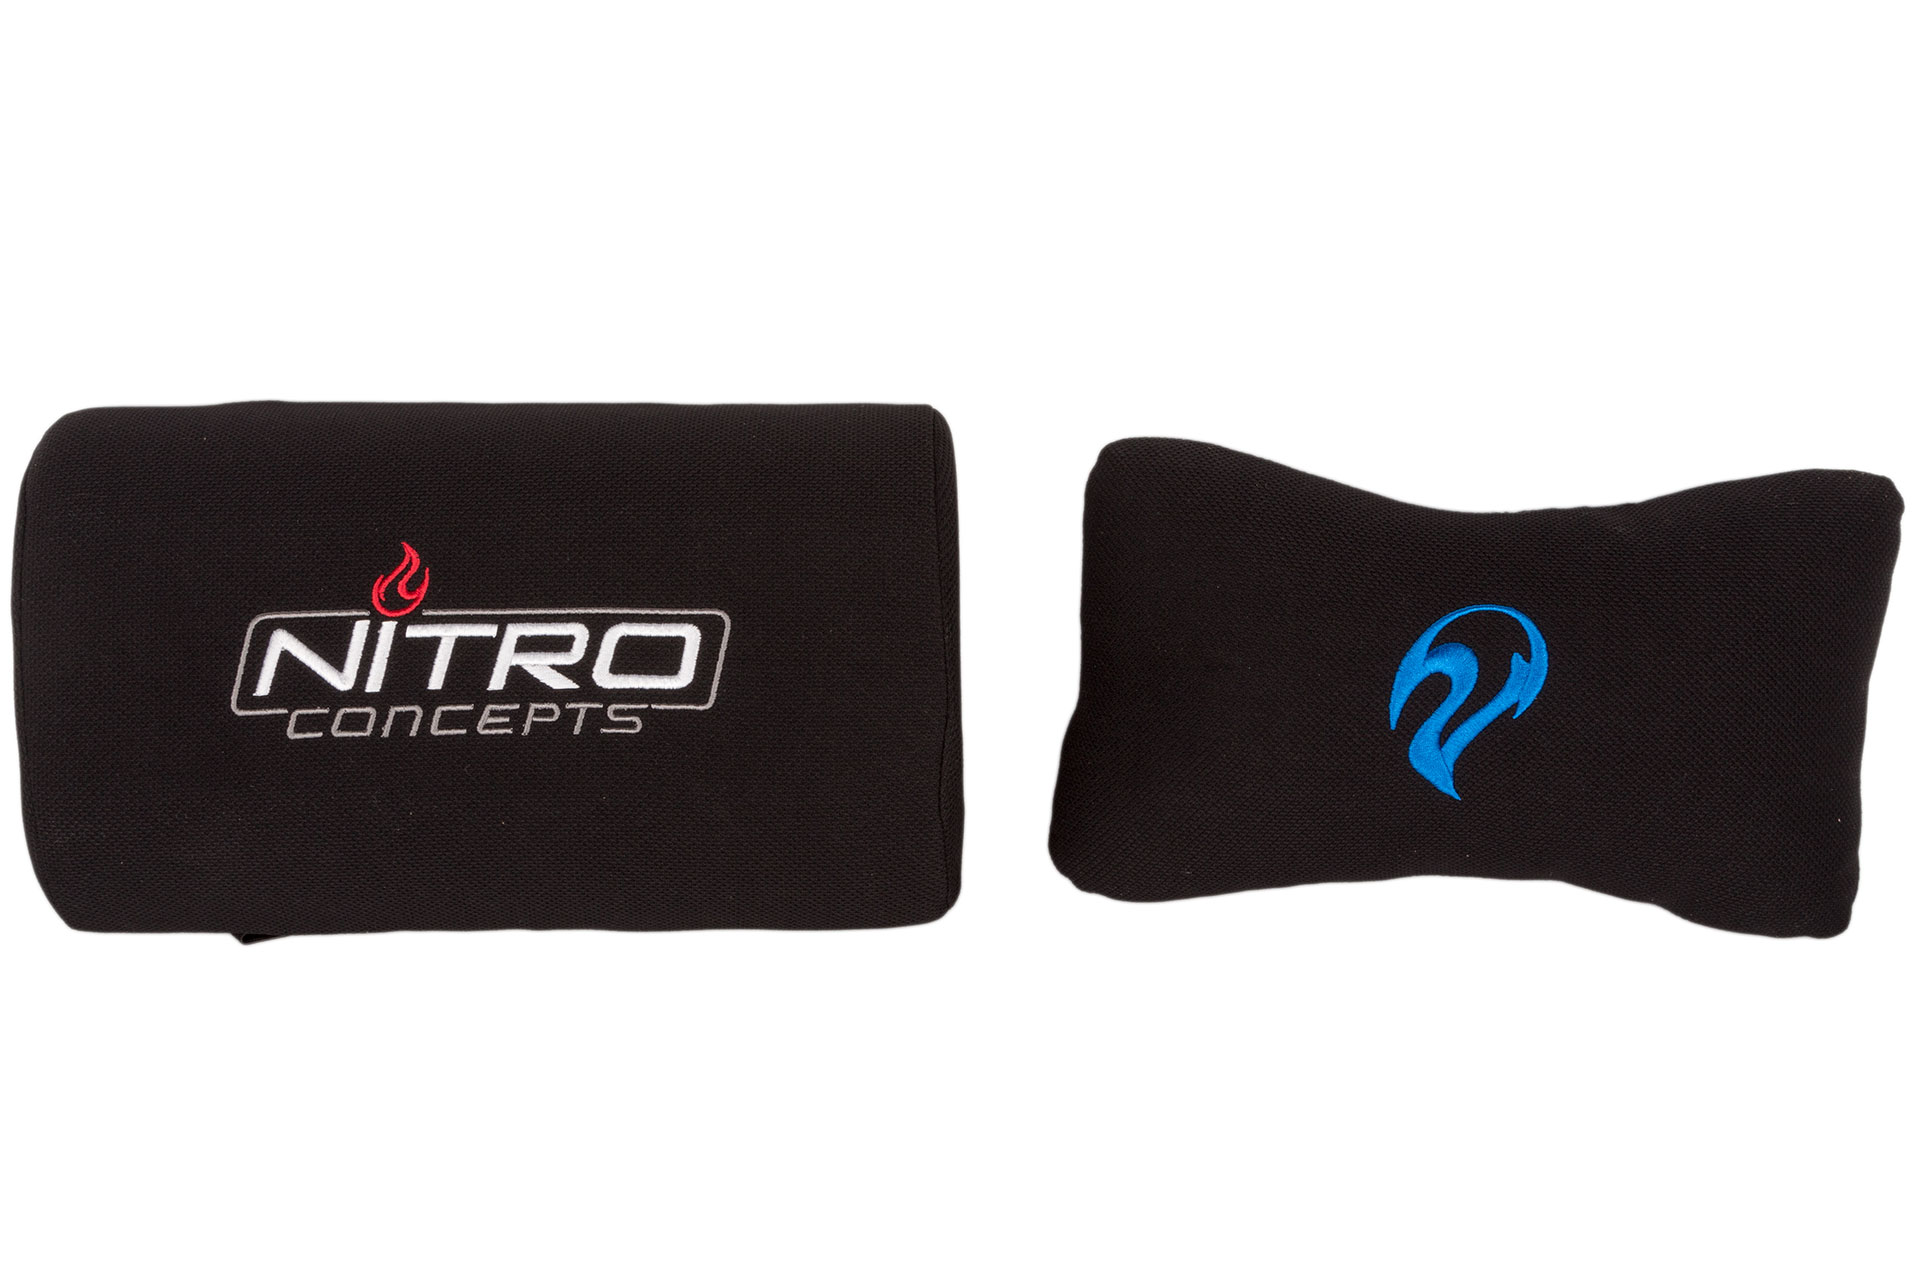 Nitro Concepts S300 Review Bit Tech Net